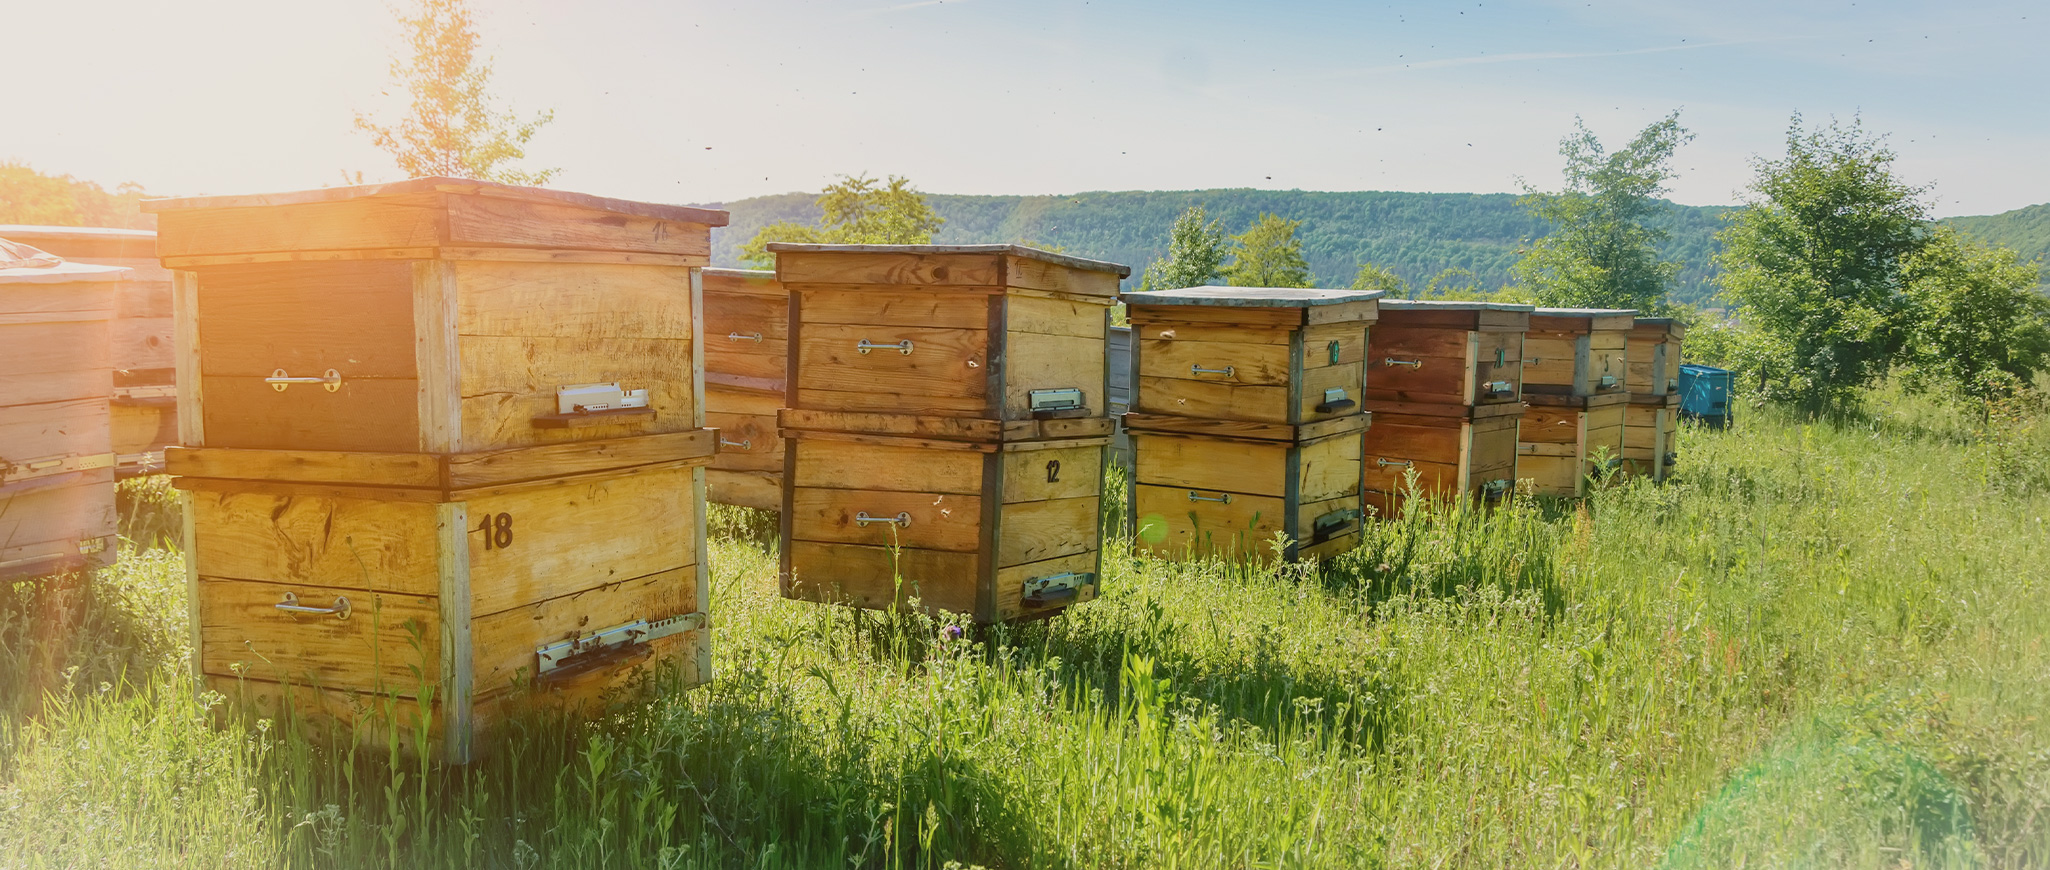 Секрети успішної пасіки: як забезпечити здоров'я та комфорт бджіл